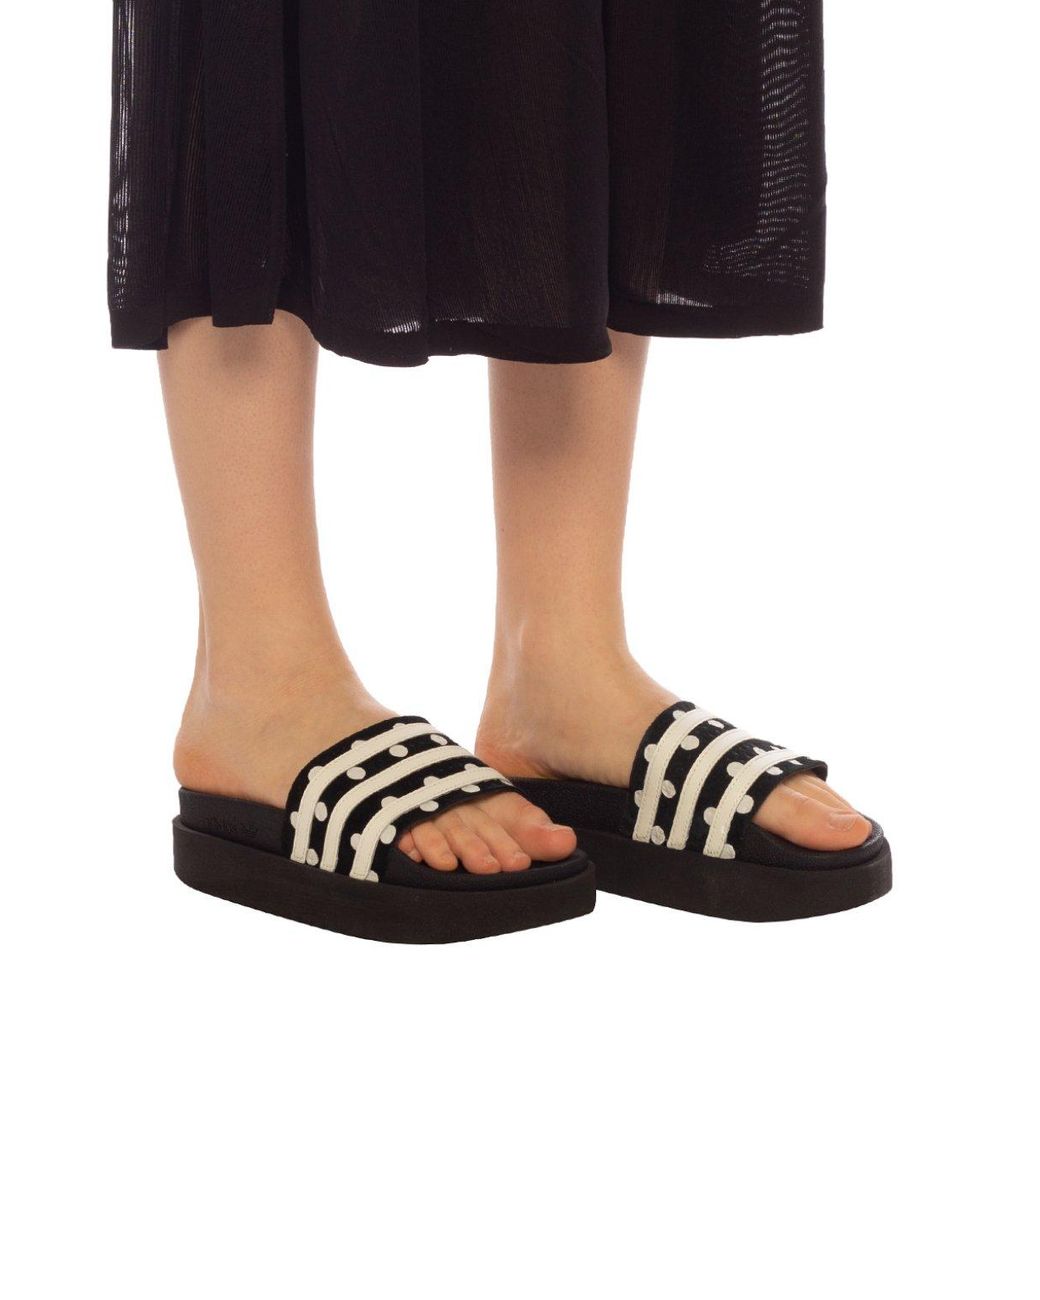 adidas Originals Adilette Bold Platform Slide Sandals in Black | Lyst UK